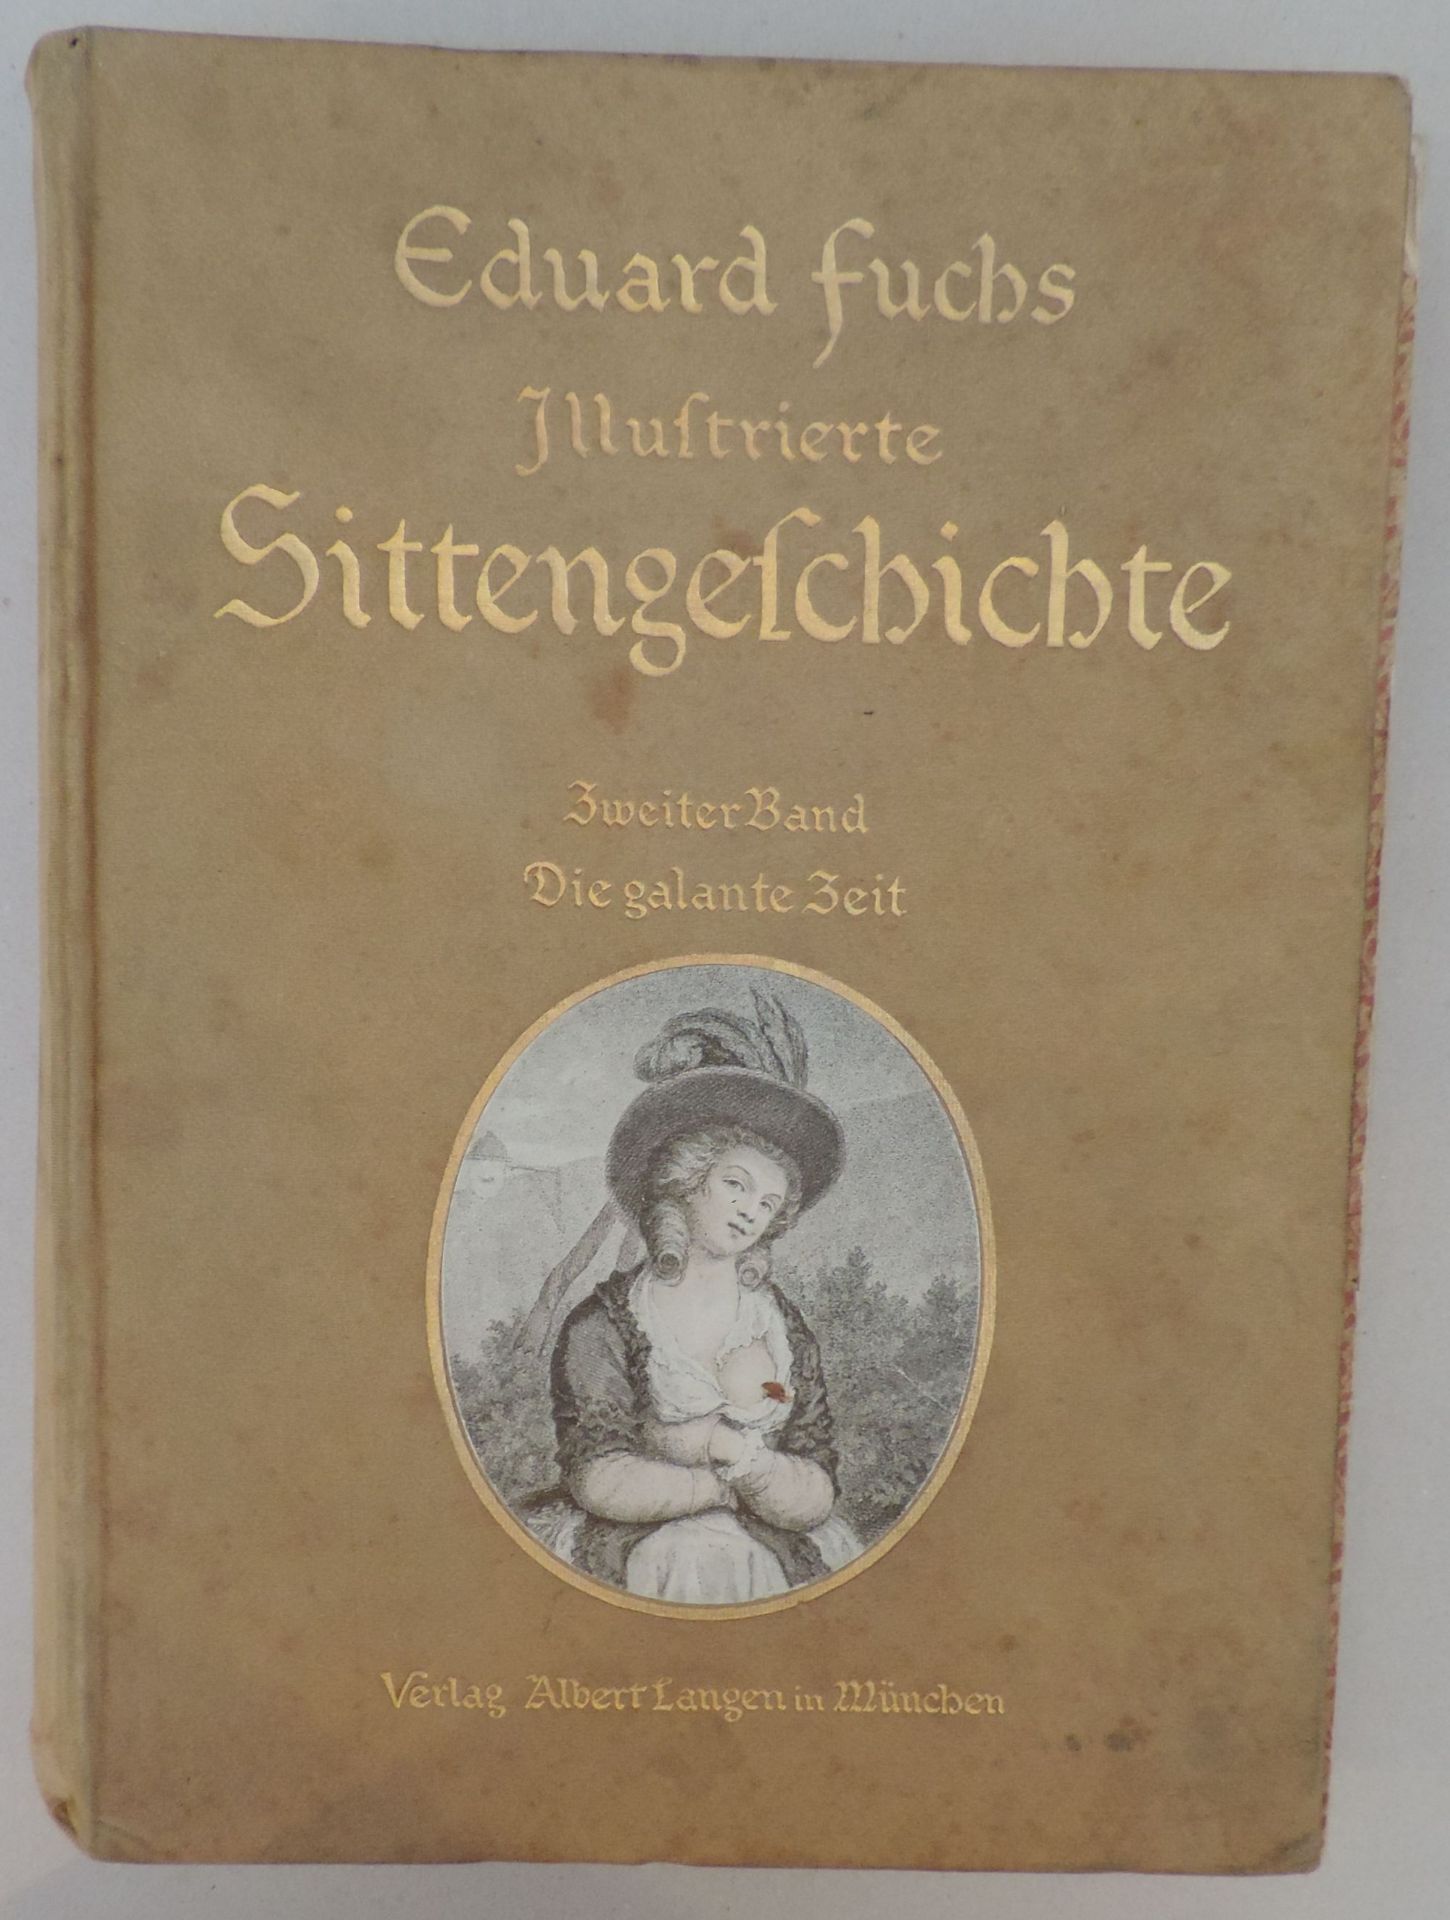 FUCHS, Eduard, Illustrierte Sittengeschichte vom Mittelalter bis zur Gegenwart, Die galante Zeit, - Bild 2 aus 2